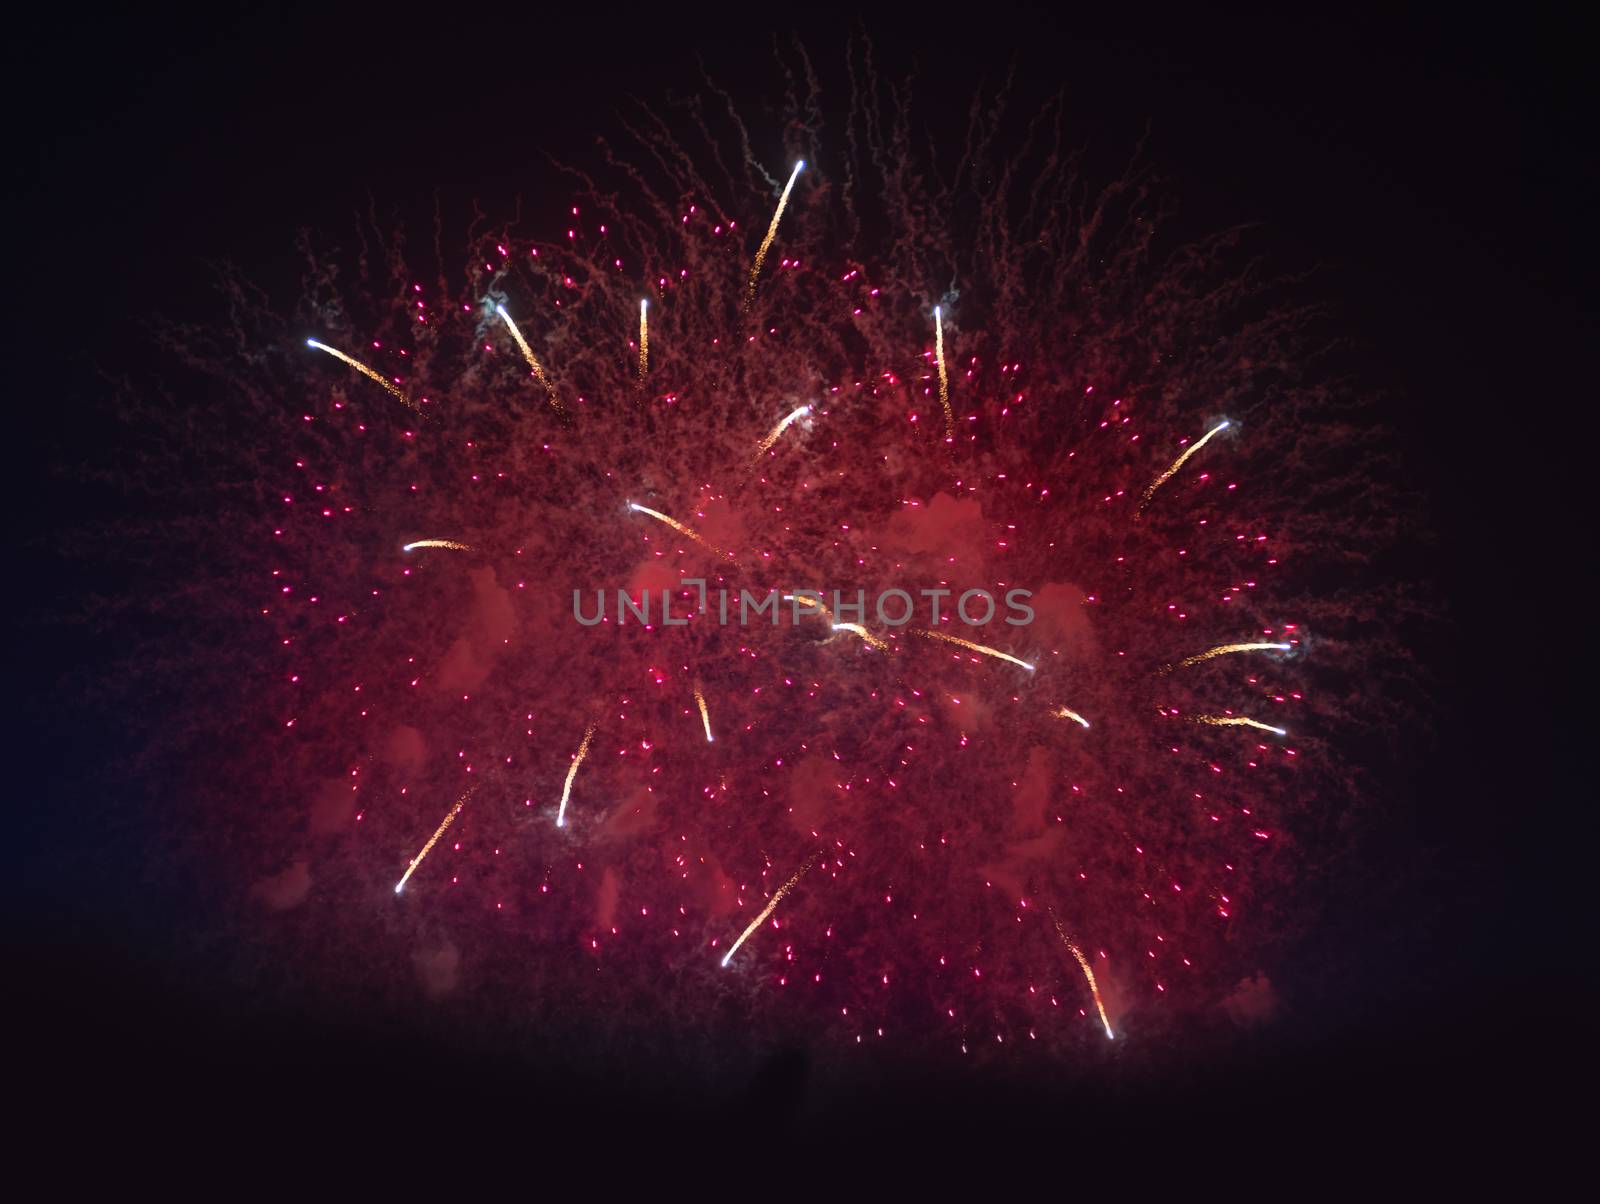 Fireworks in night dark sky by iryna_rasko